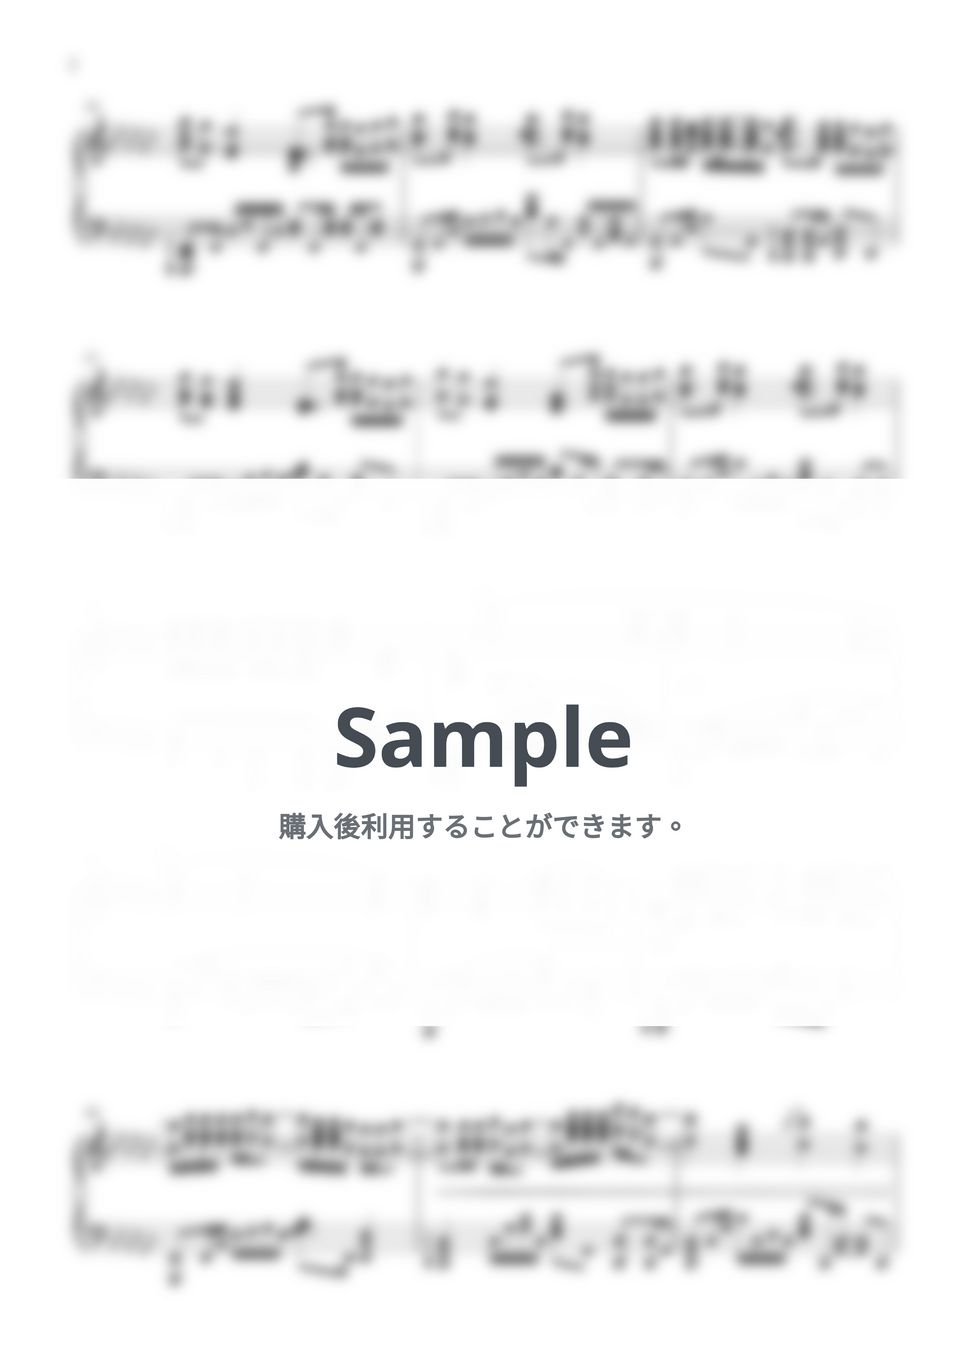 SawanoHiroyuki[nZk]:XAI - DARK ARIA <LV2> (俺だけレベルアップな件) by SLSMusic